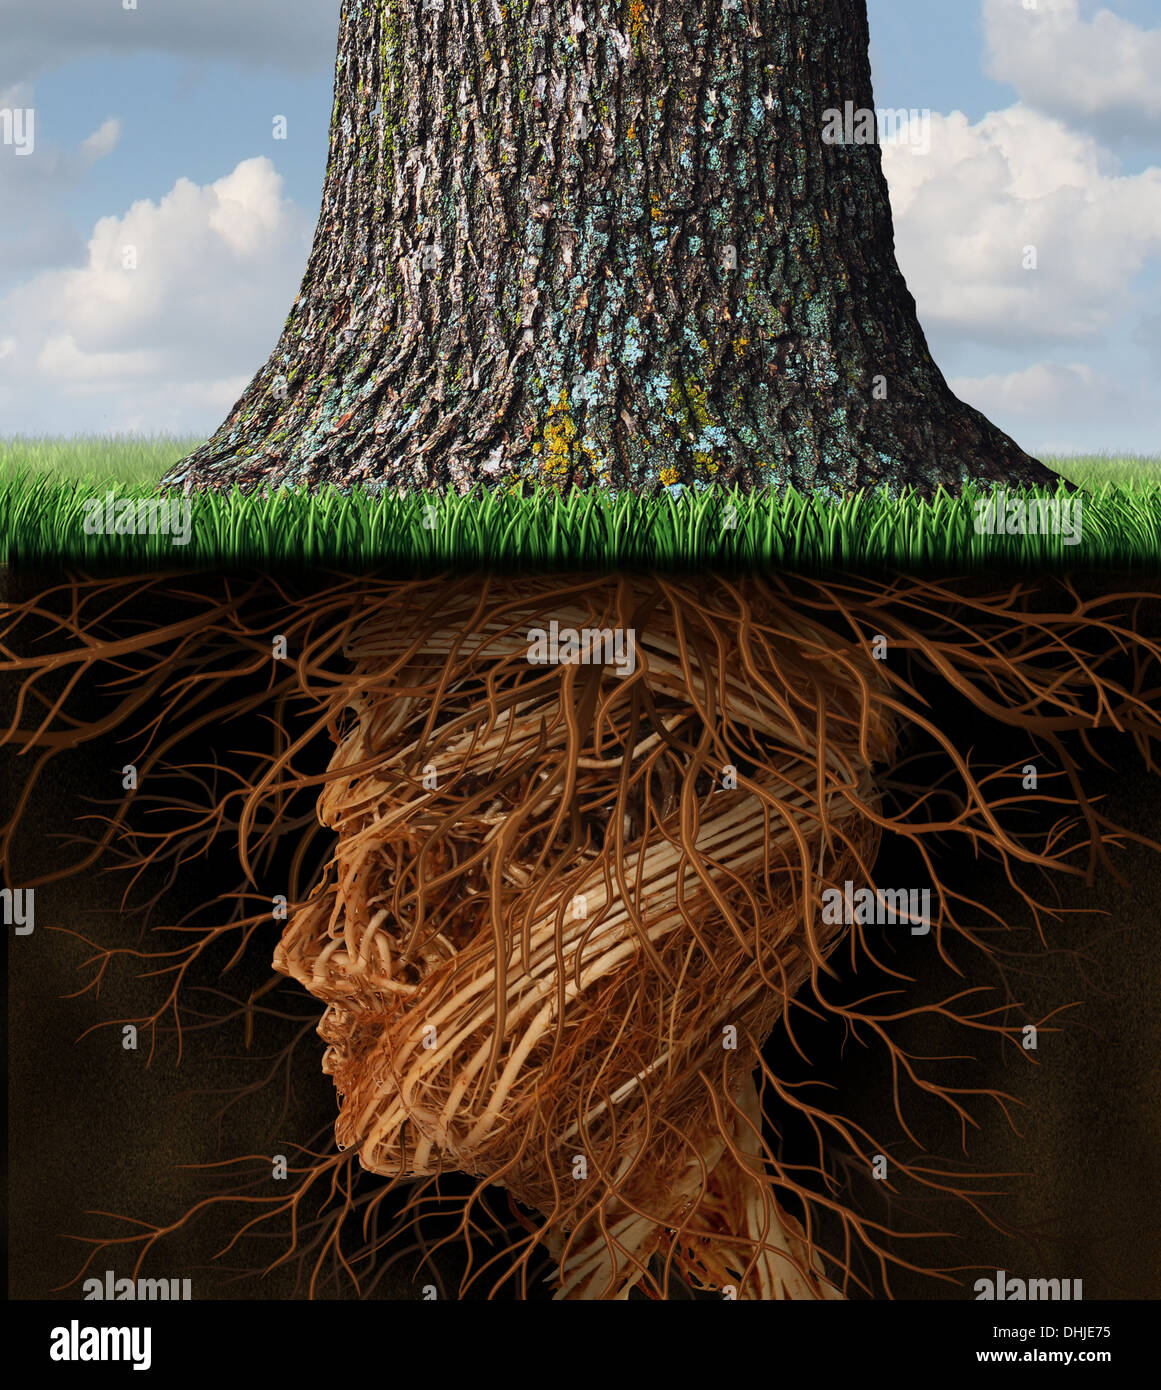 Prendere la radice e il radicamento di business e health care concetto con la metropolitana radici di albero a forma di una testa umana come un alto albero cresce al di sopra come un icona di crescita e di successo nella cura della salute e della ricchezza. Foto Stock